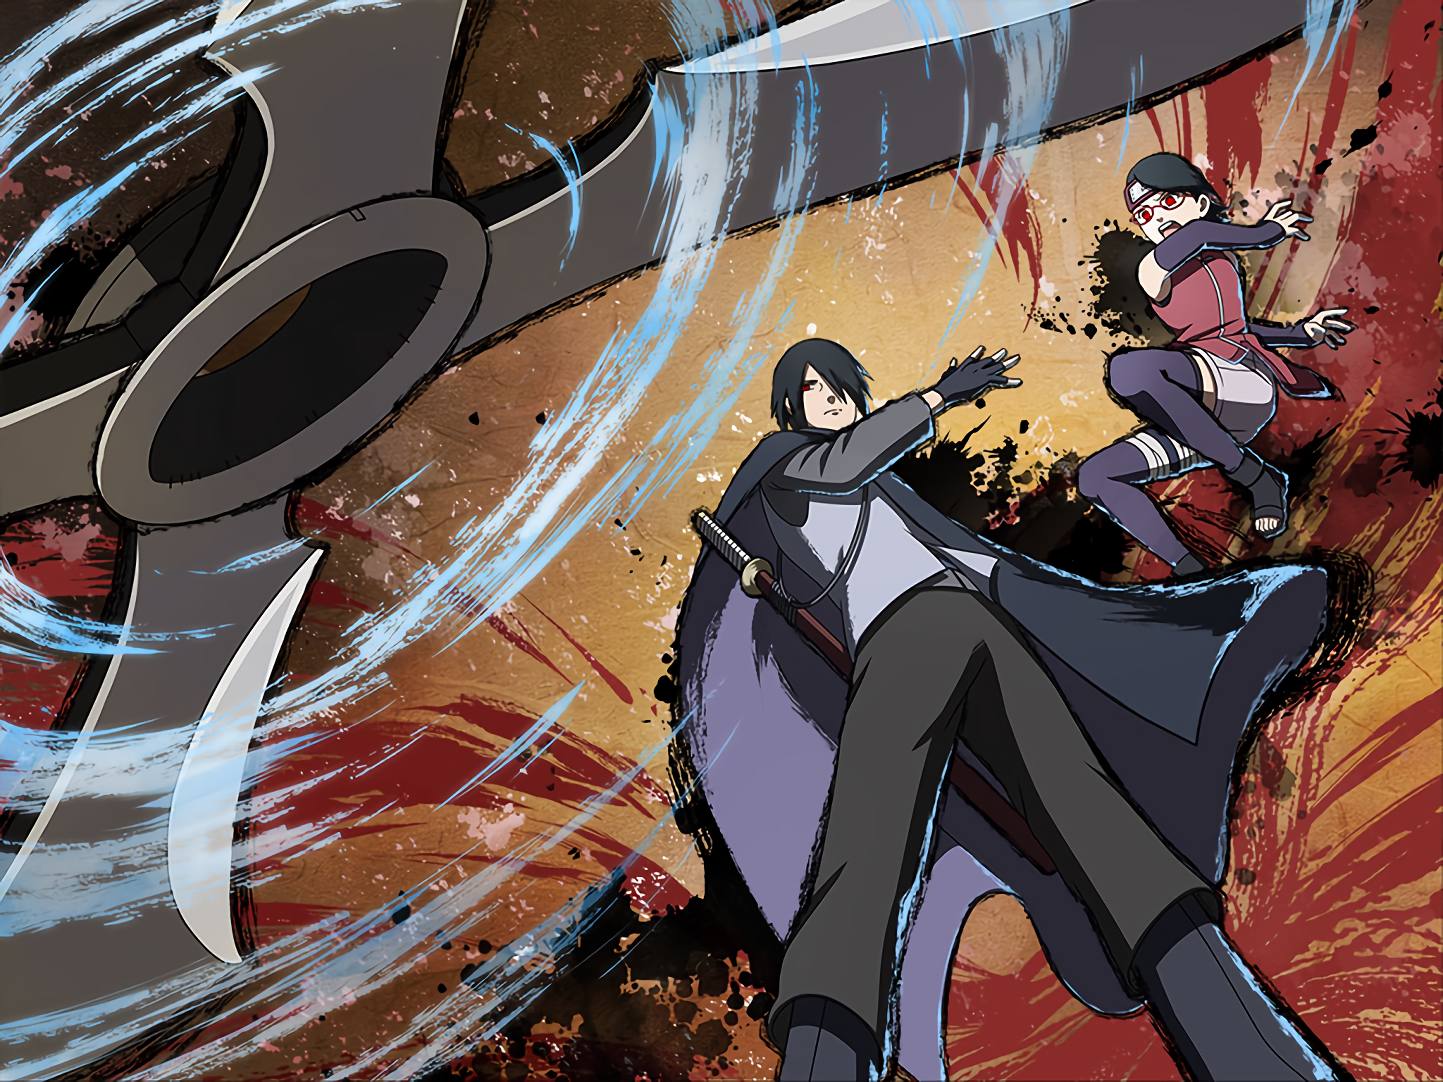 Sasuke & Sarada Uchiha wallpaper by Rtg_Daksh - Download on ZEDGE™